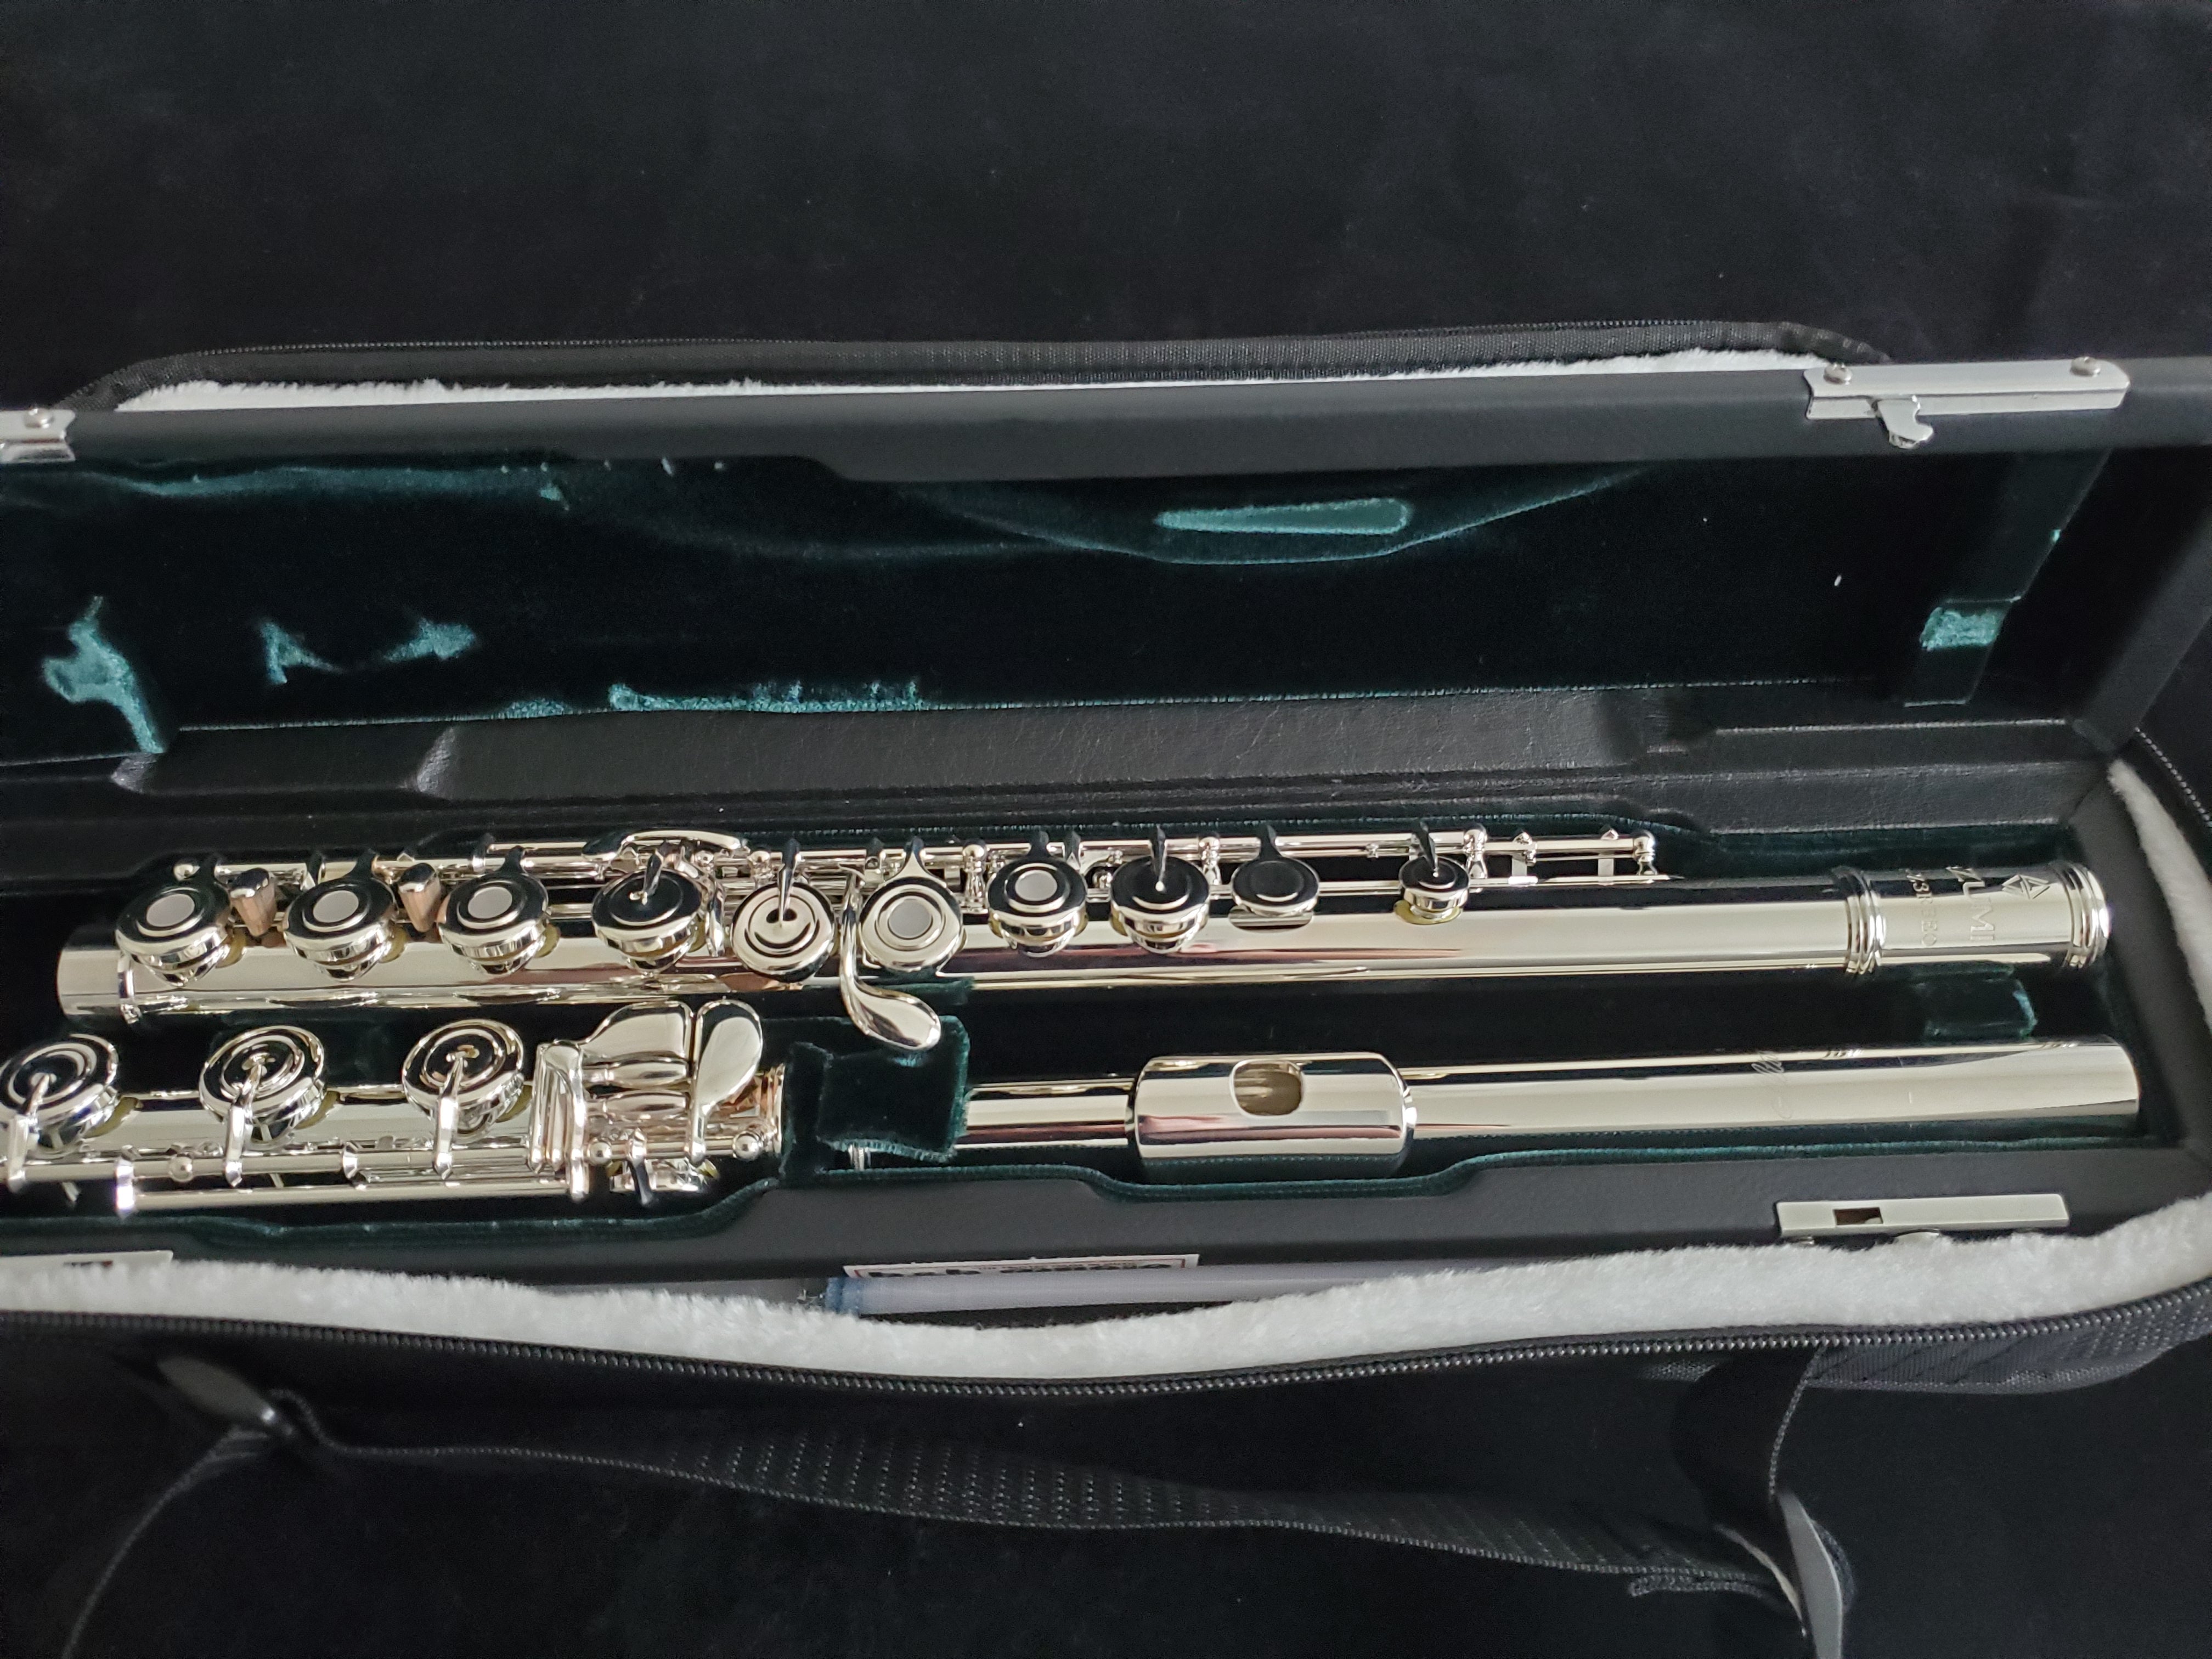 Intermediate Flute